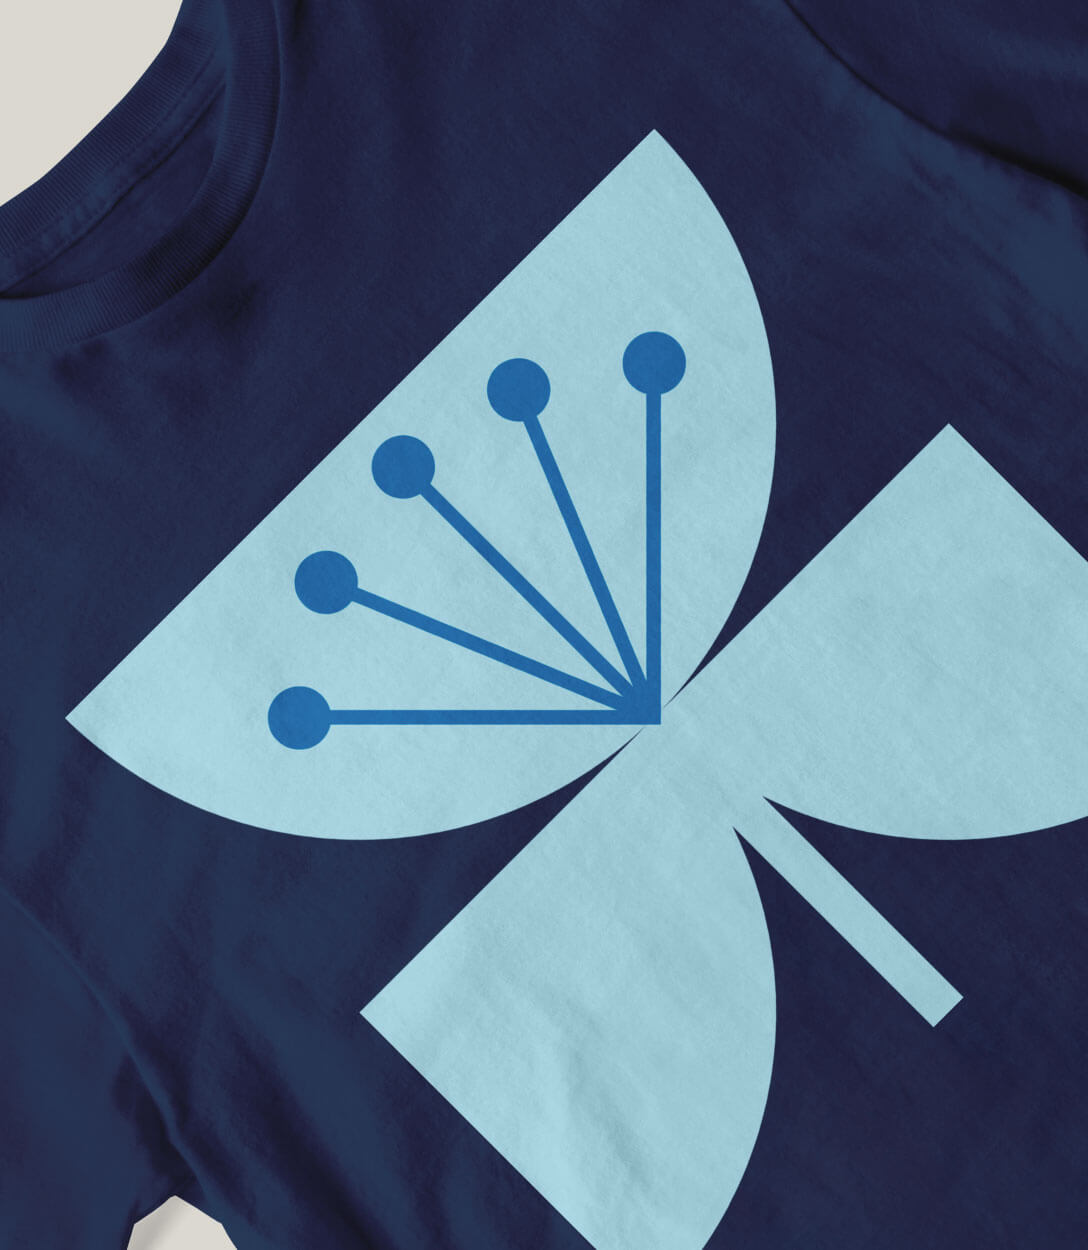 Detalle de camiseta diseñada para Saona azul oscuro con dibujo en azul claro